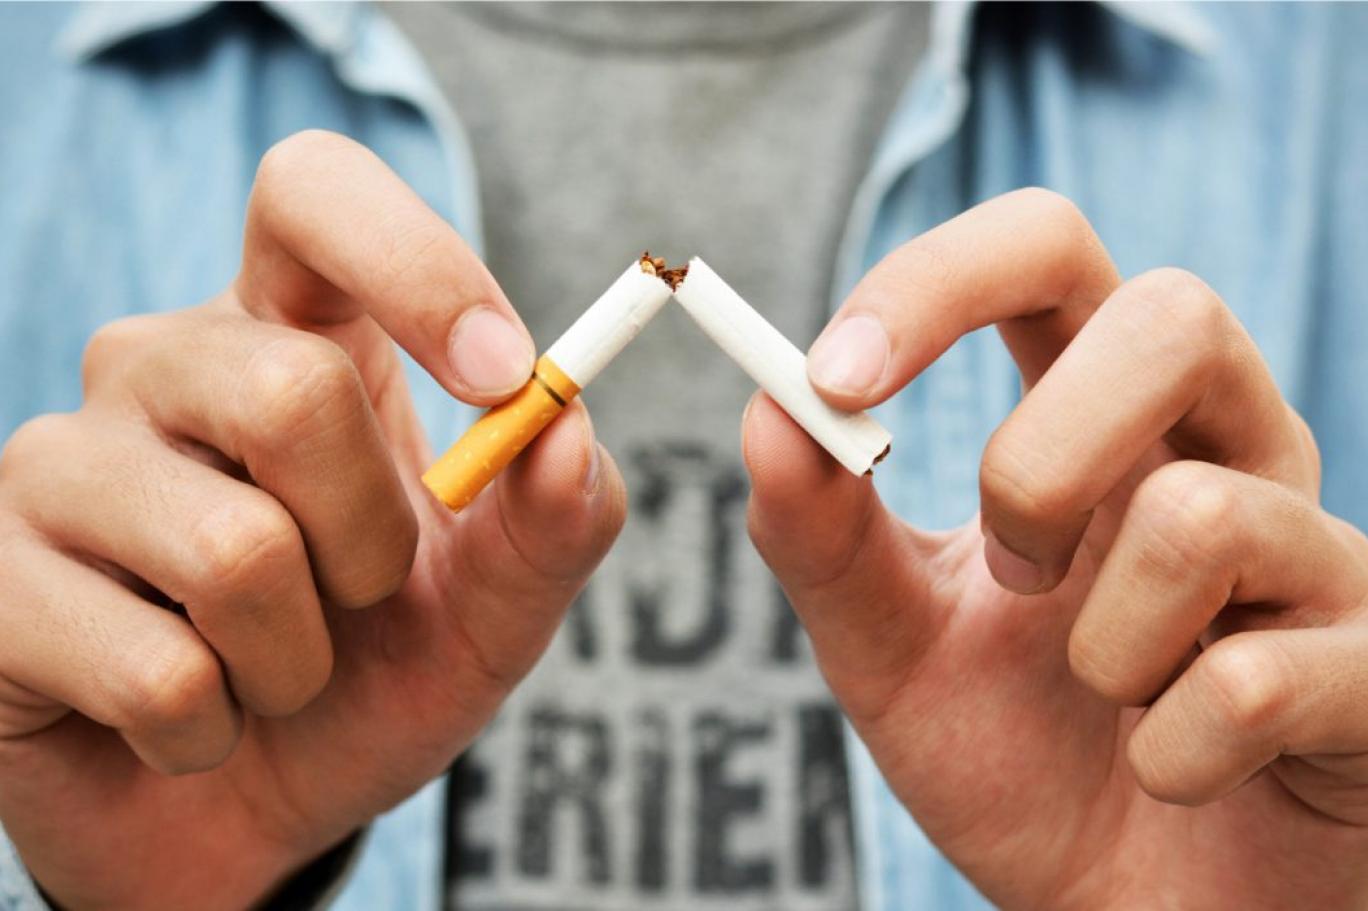 Kế hoạch bỏ thuốc lá khoa học với 3 bước và cách rút ngắn thời gian tối ưu